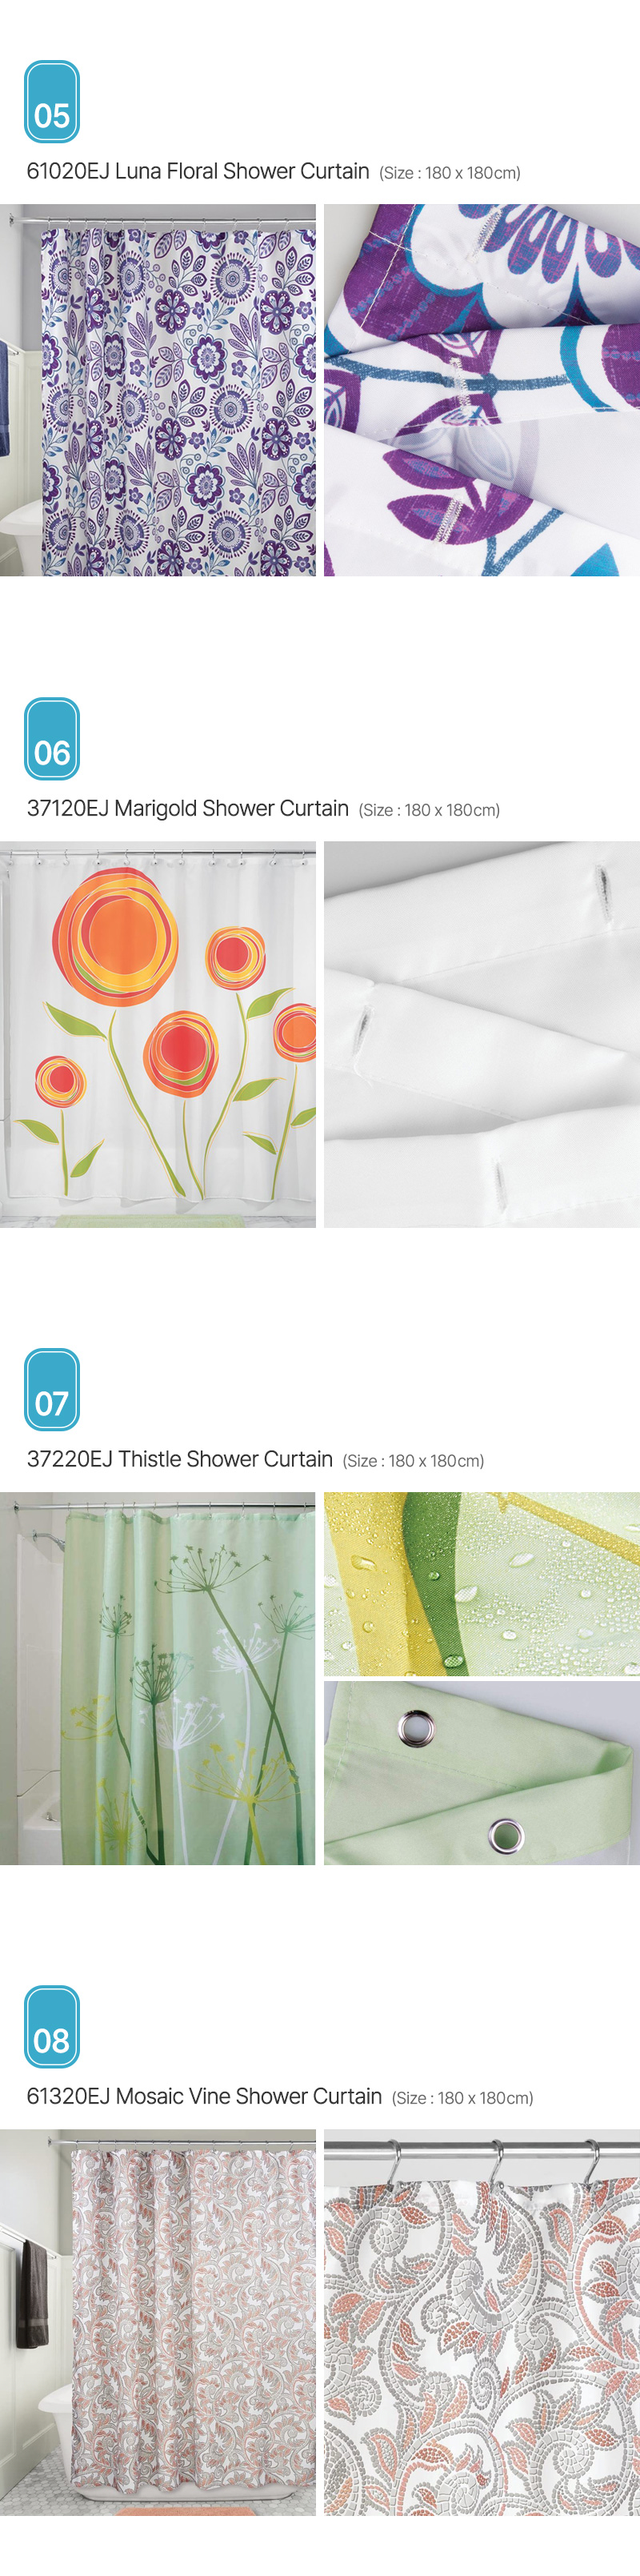 Aria_Shower-Curtain_02.jpg